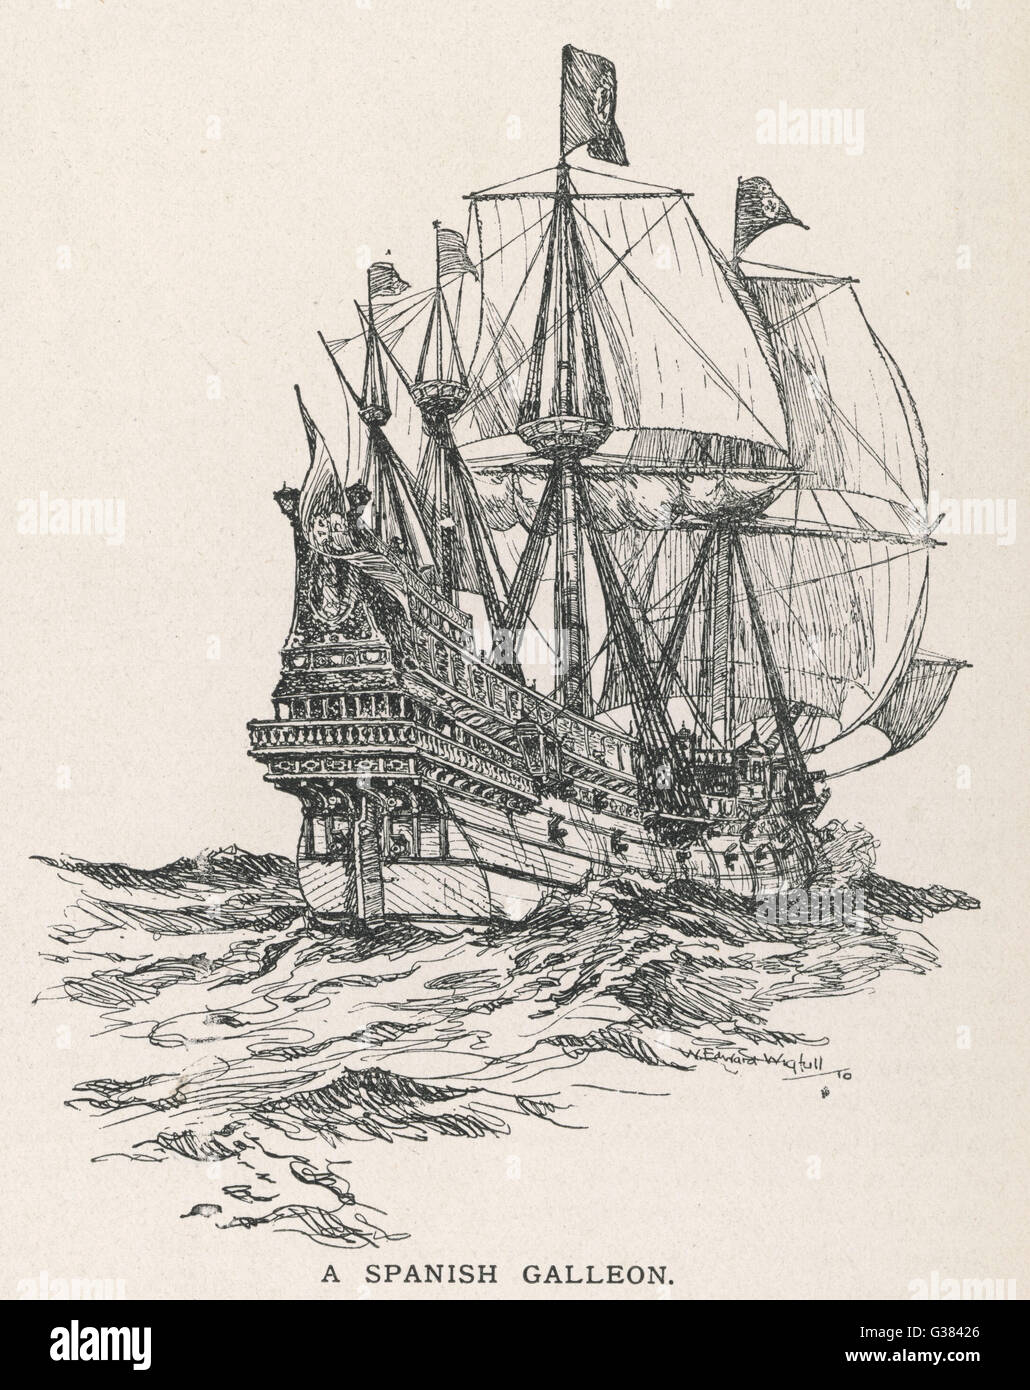 Un galion espagnol, du type qui a navigué avec l'Armada en 1588 Date : vers 1580 Banque D'Images